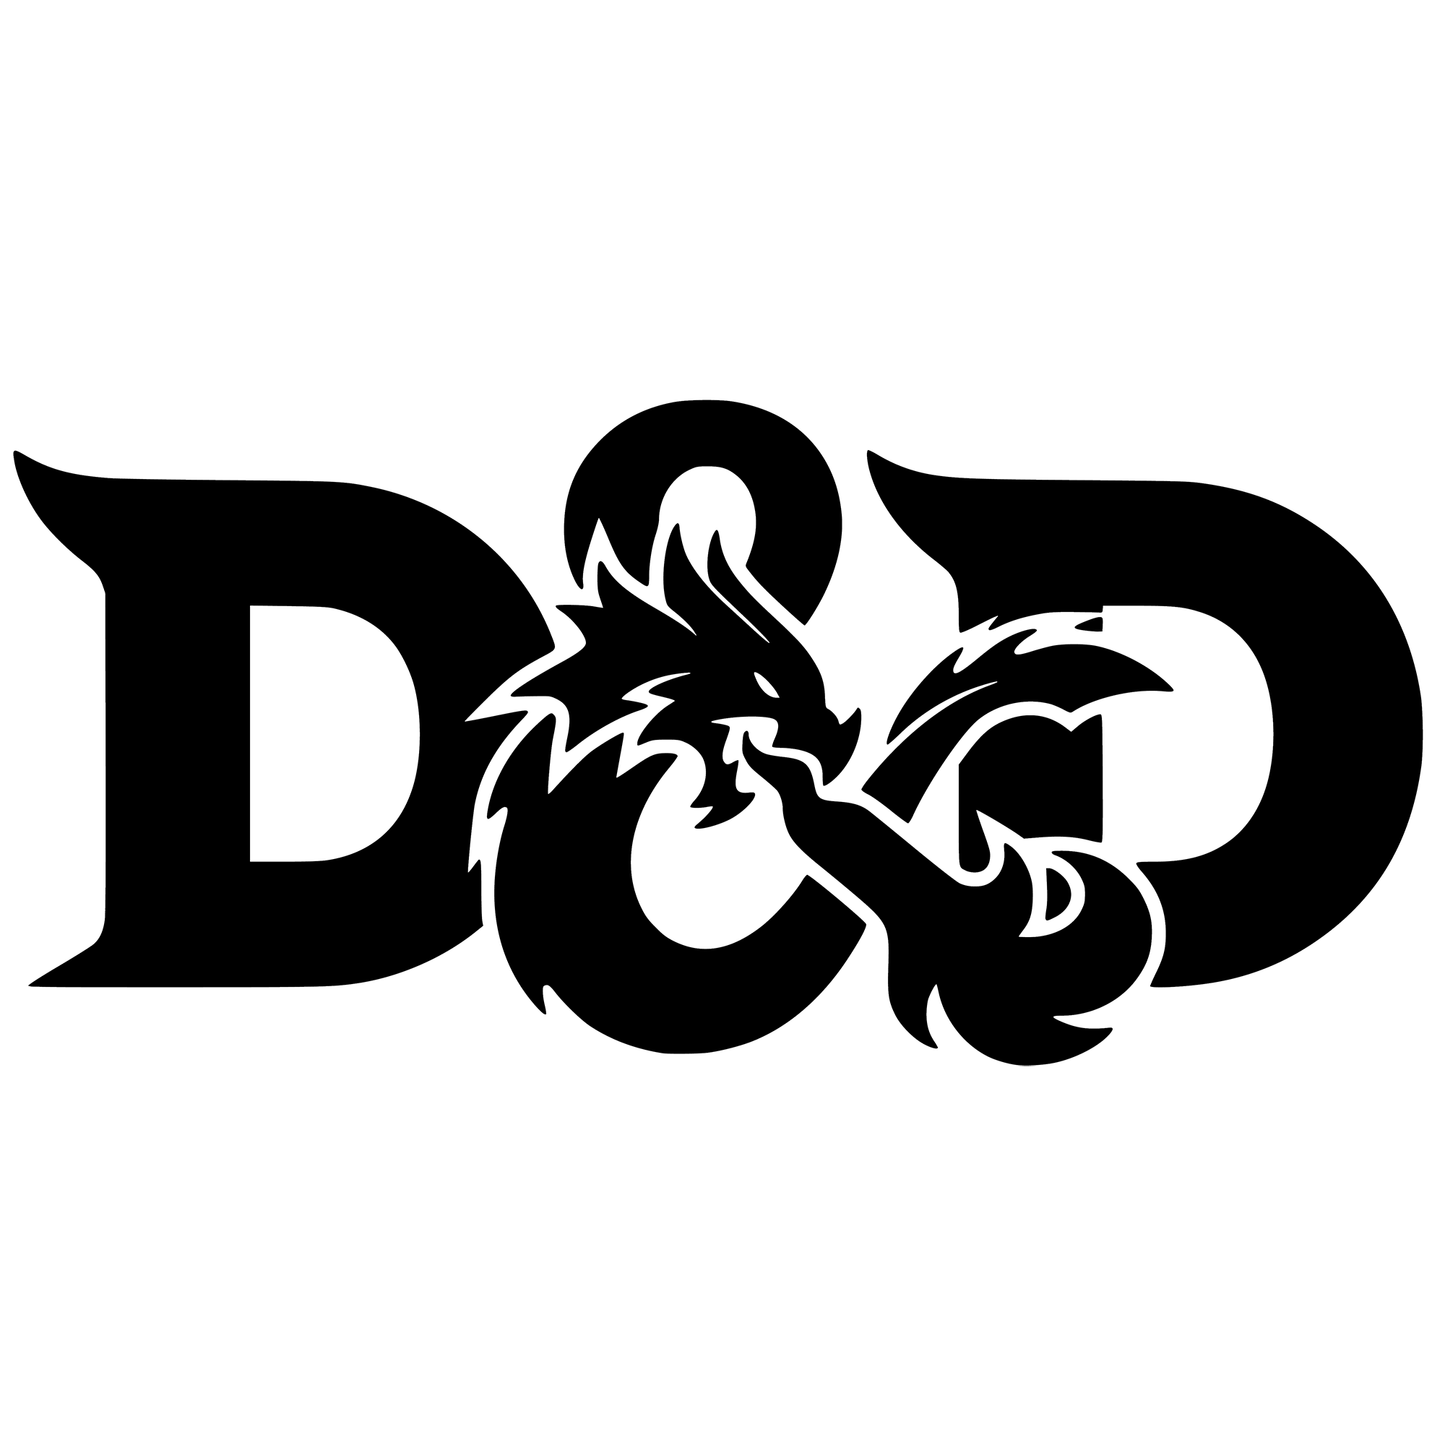 Dungeons & Dragons D&D Logo Vinyl Decal Sticker